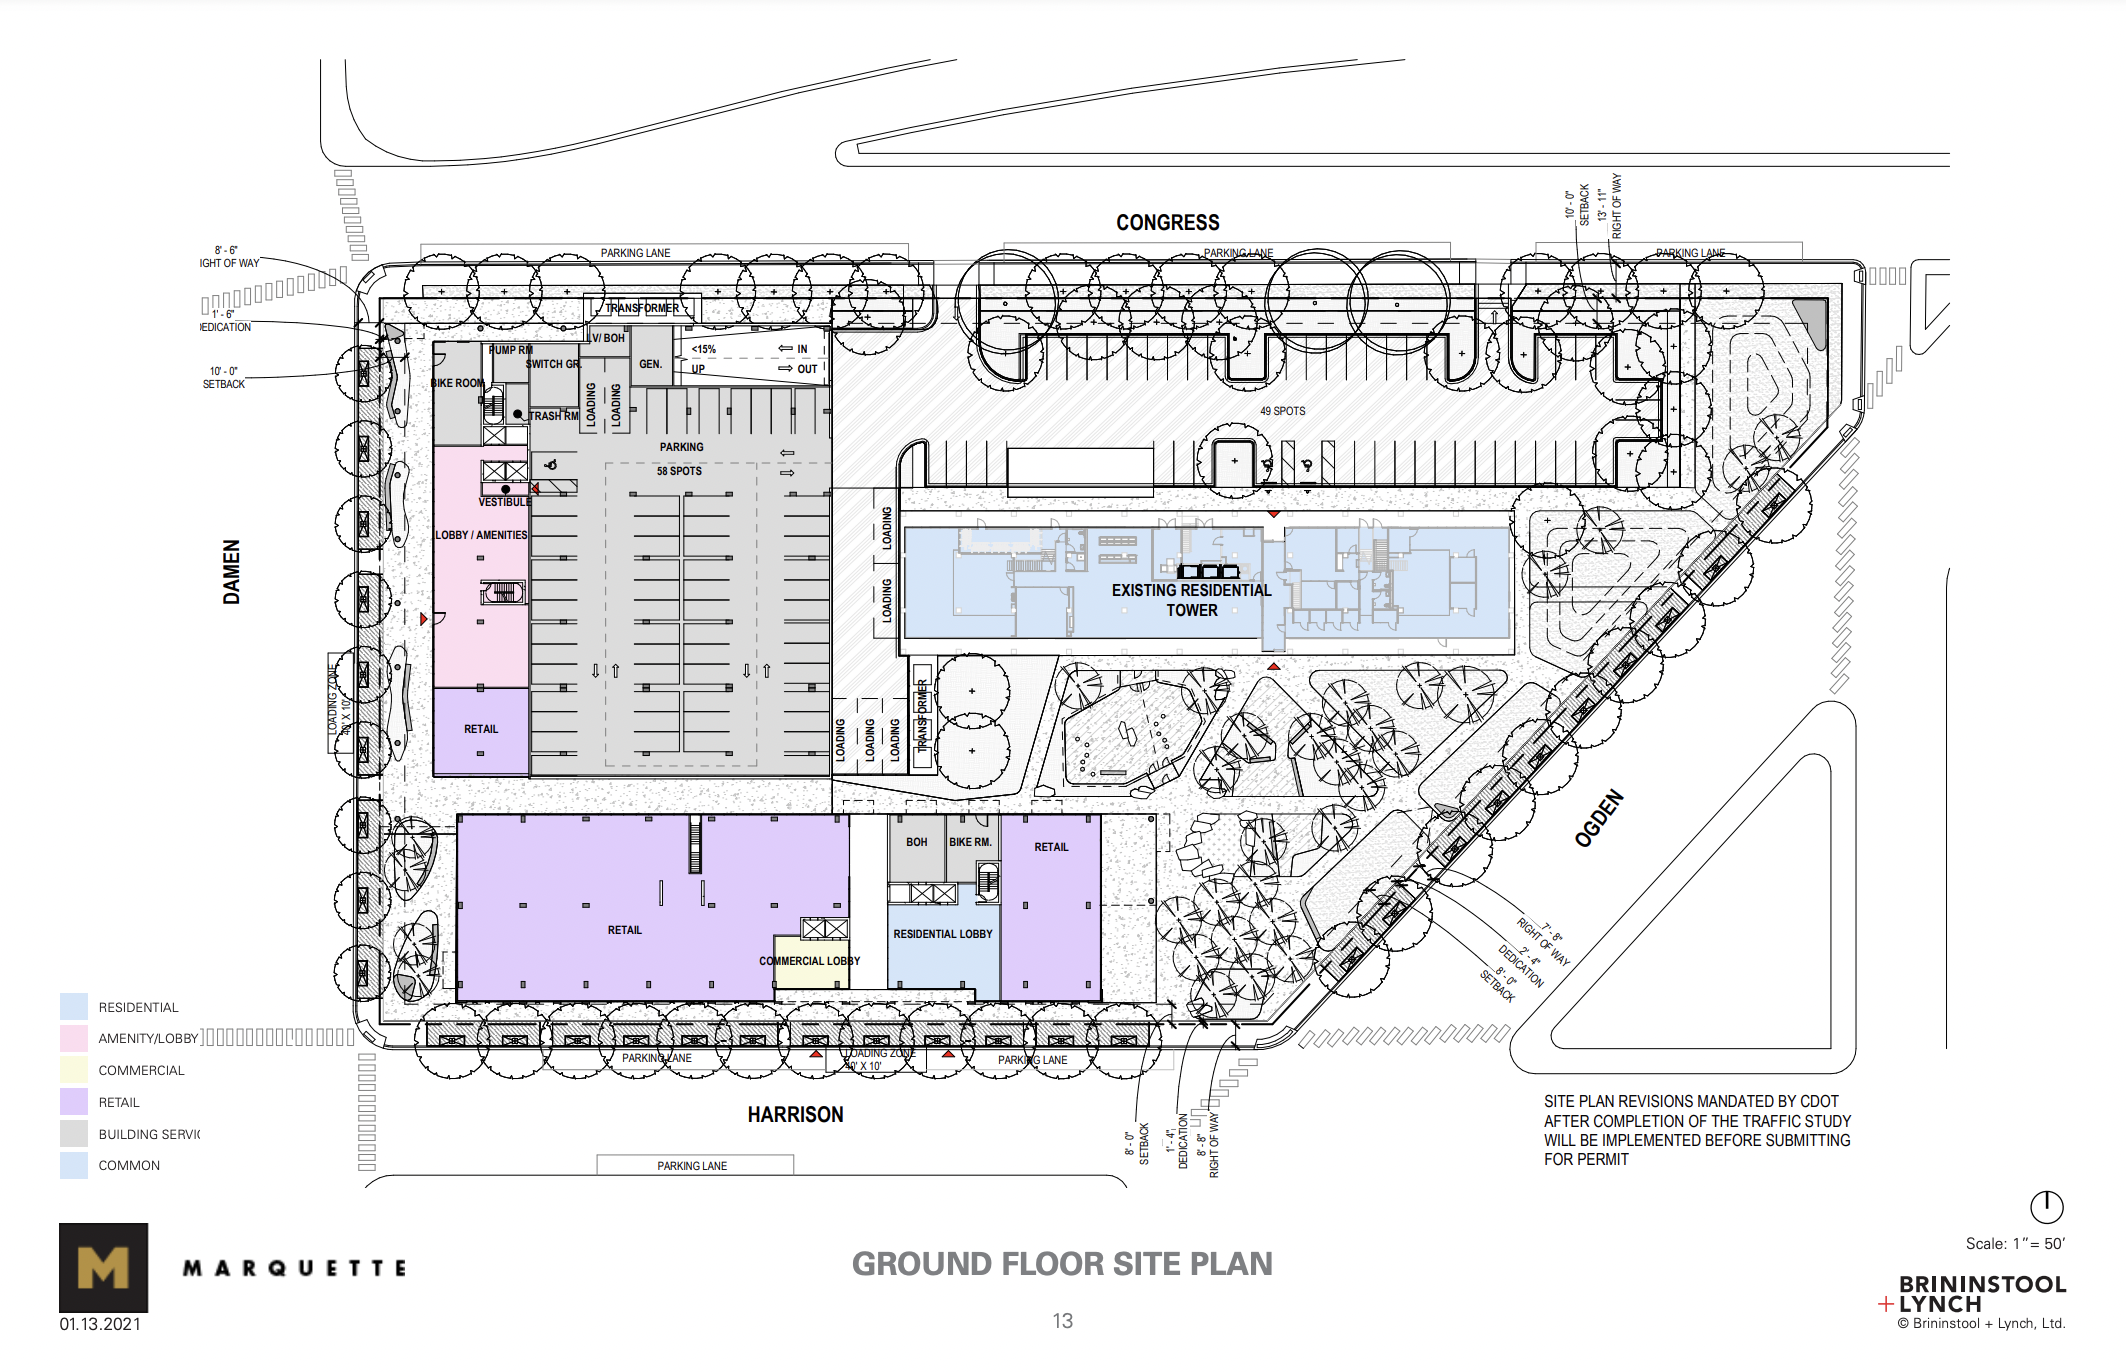 Ground floor in masterplan (513 S Damen Avenue in upper left)